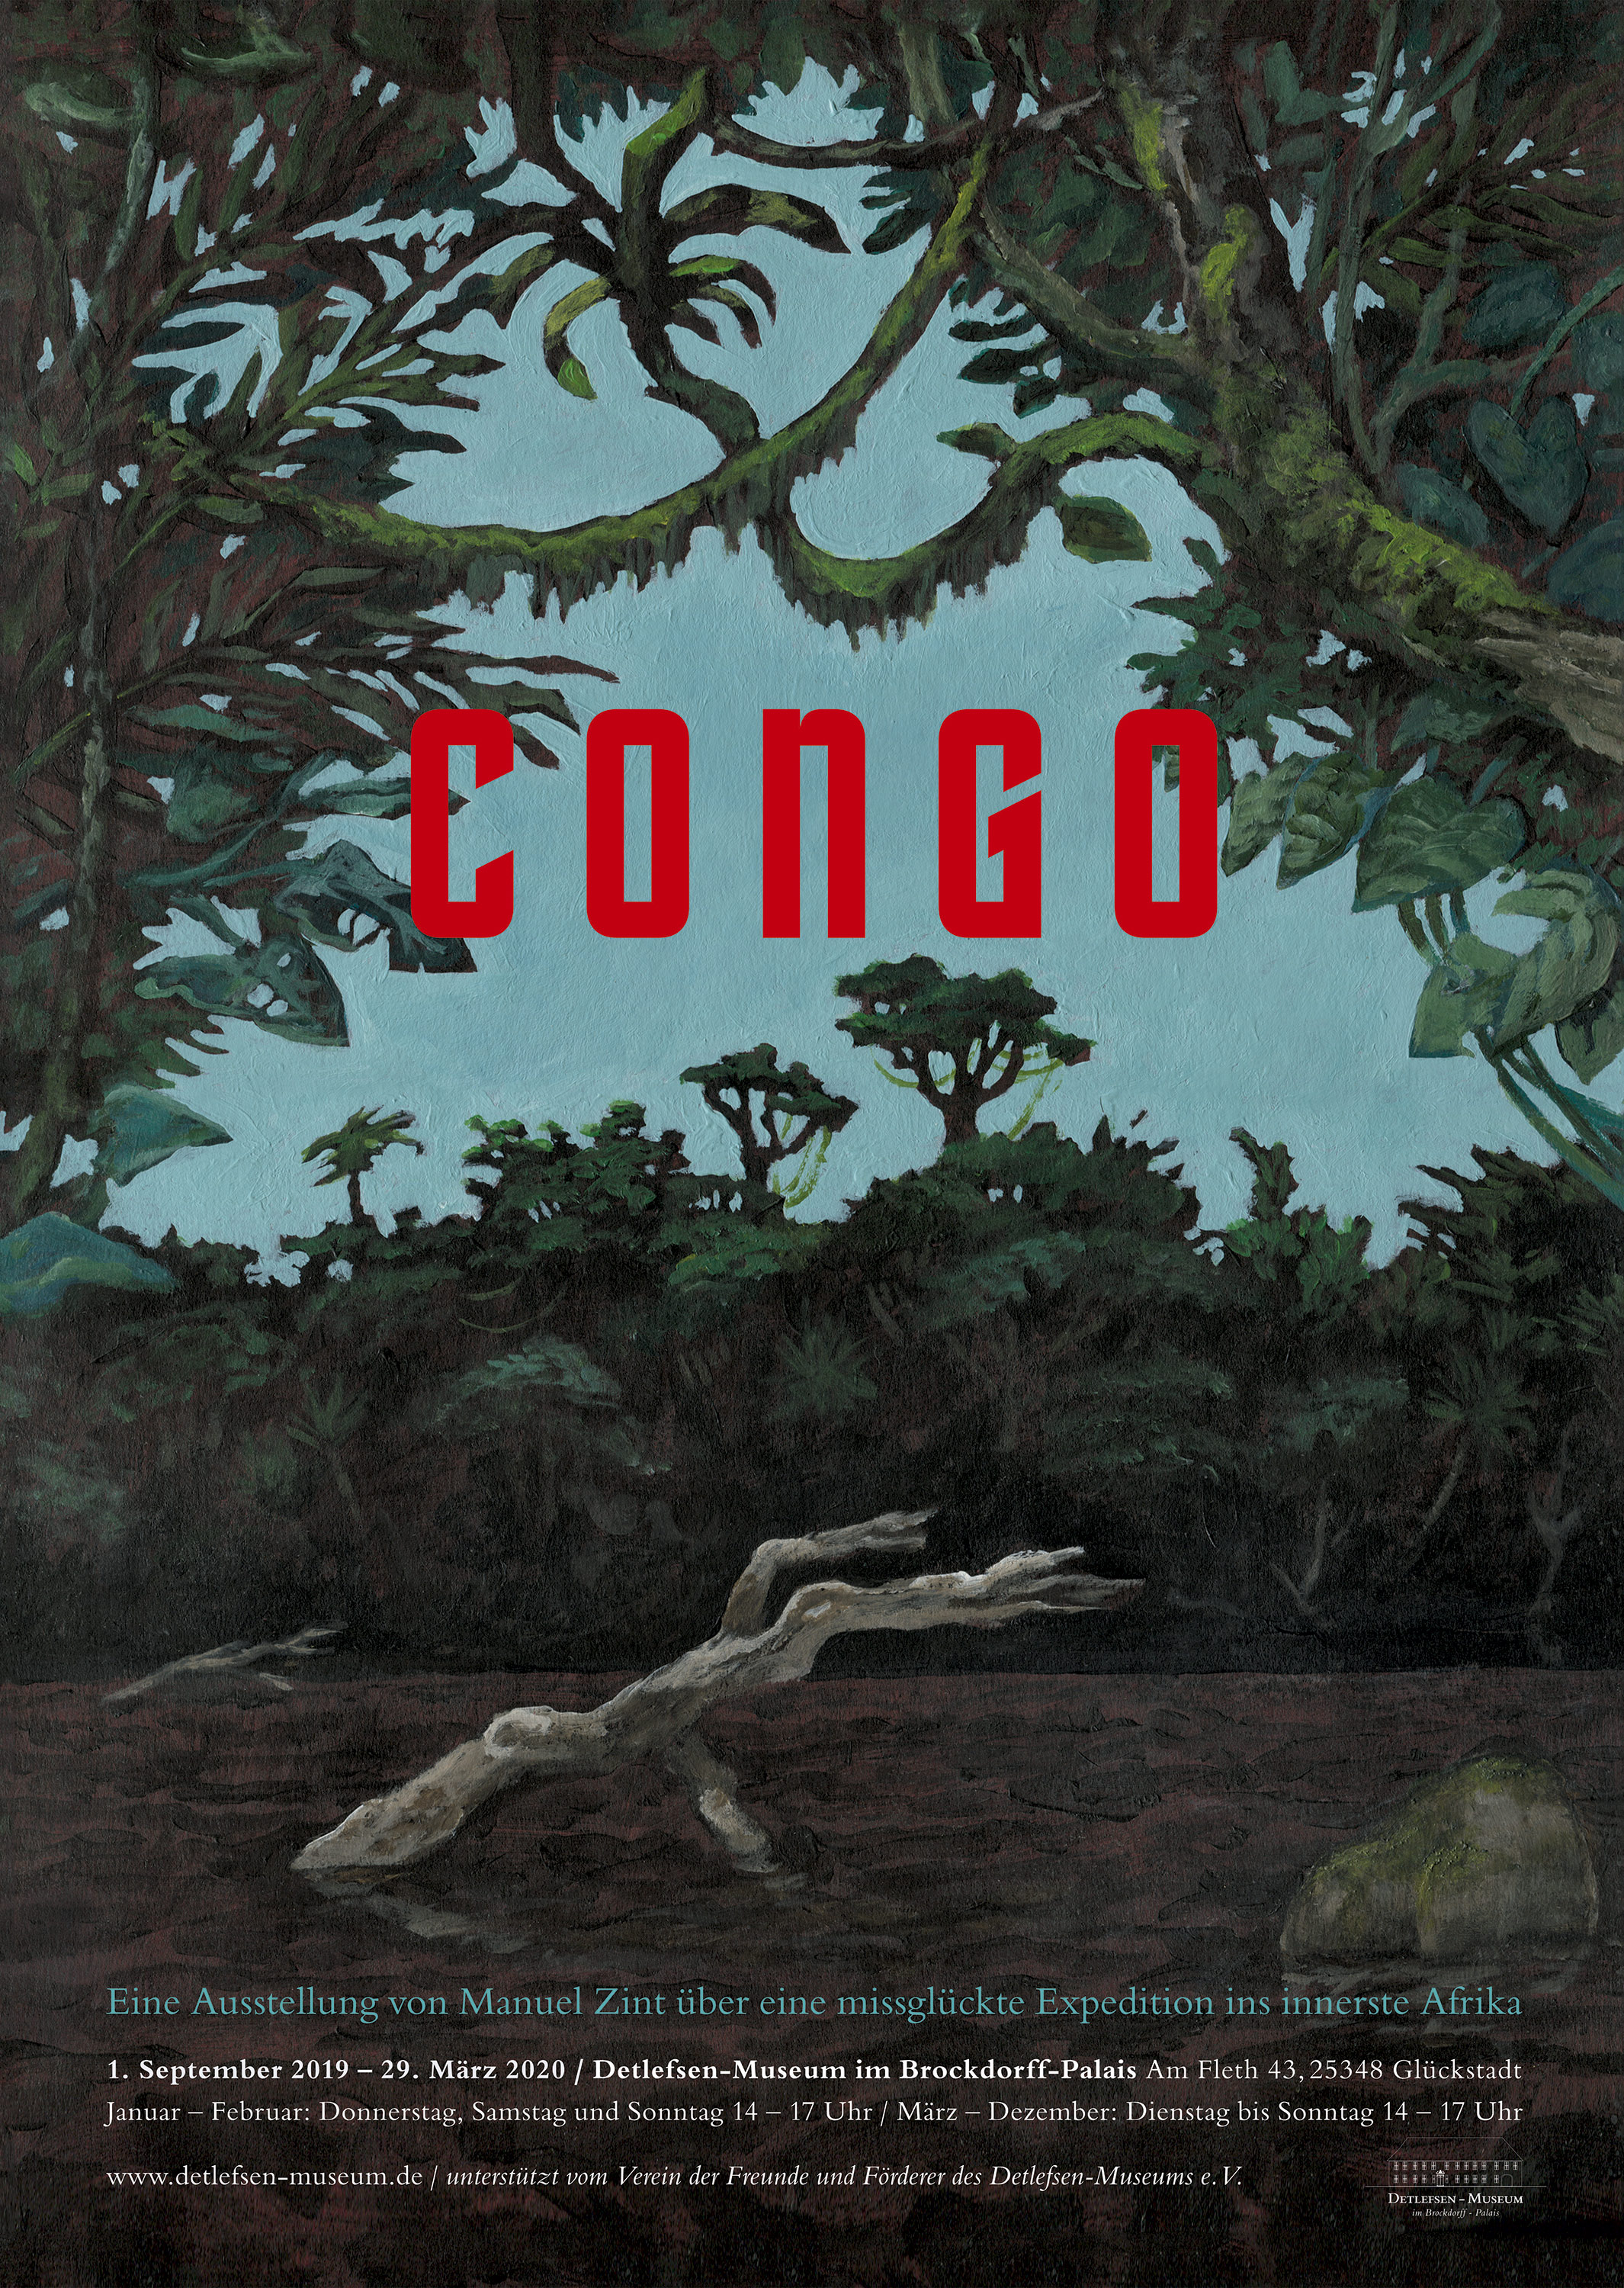 Plakat Congo, eine Ausstellung im Detlefsen-Museum, Glückstadt von Manuel Zint